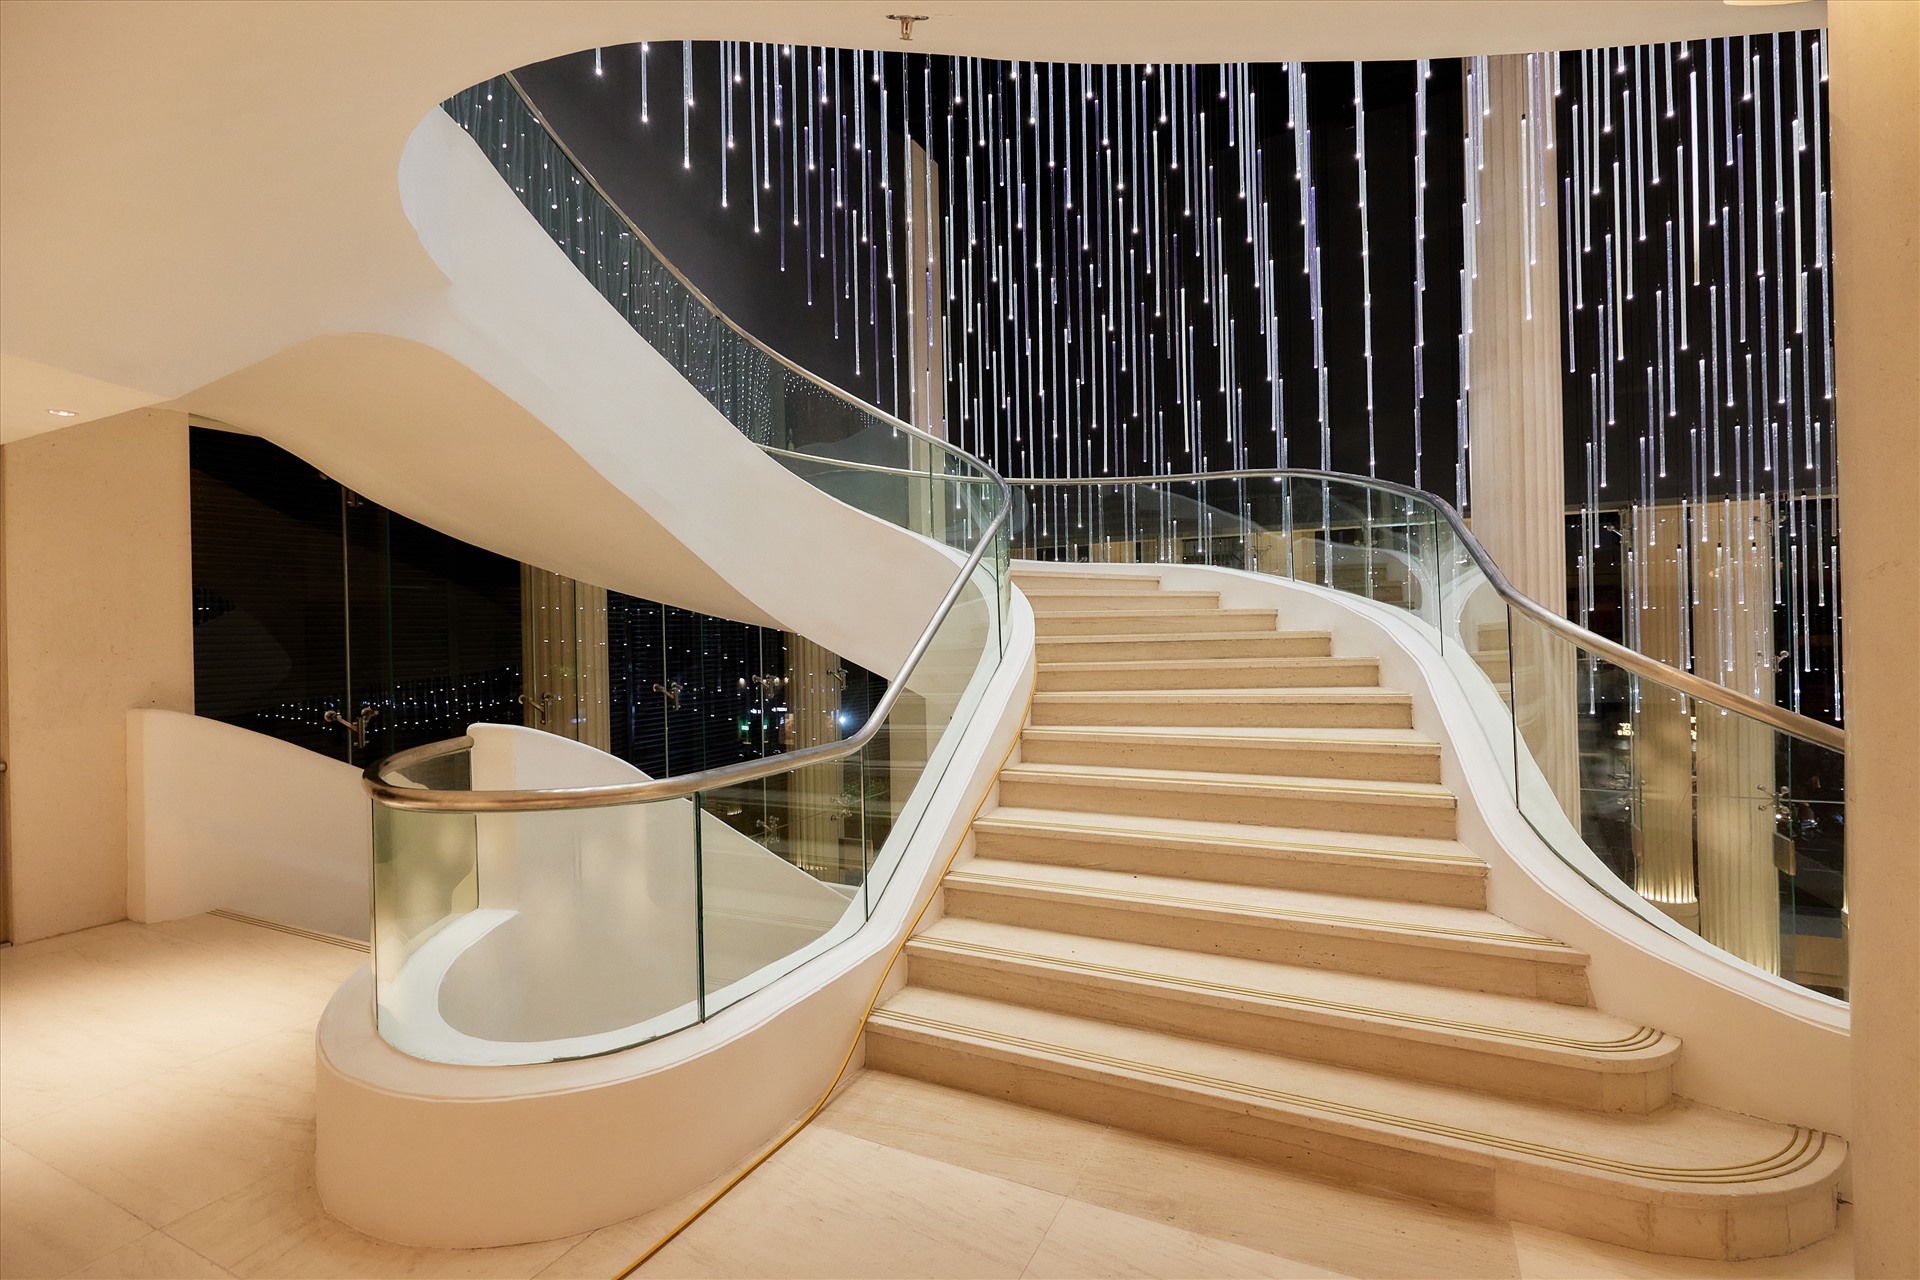 Ngoài hệ thống thang máy kép, khán giả có thể đi cầu thang hình xoắn ốc từ tầng một lên tầng 6 ở hai bên.